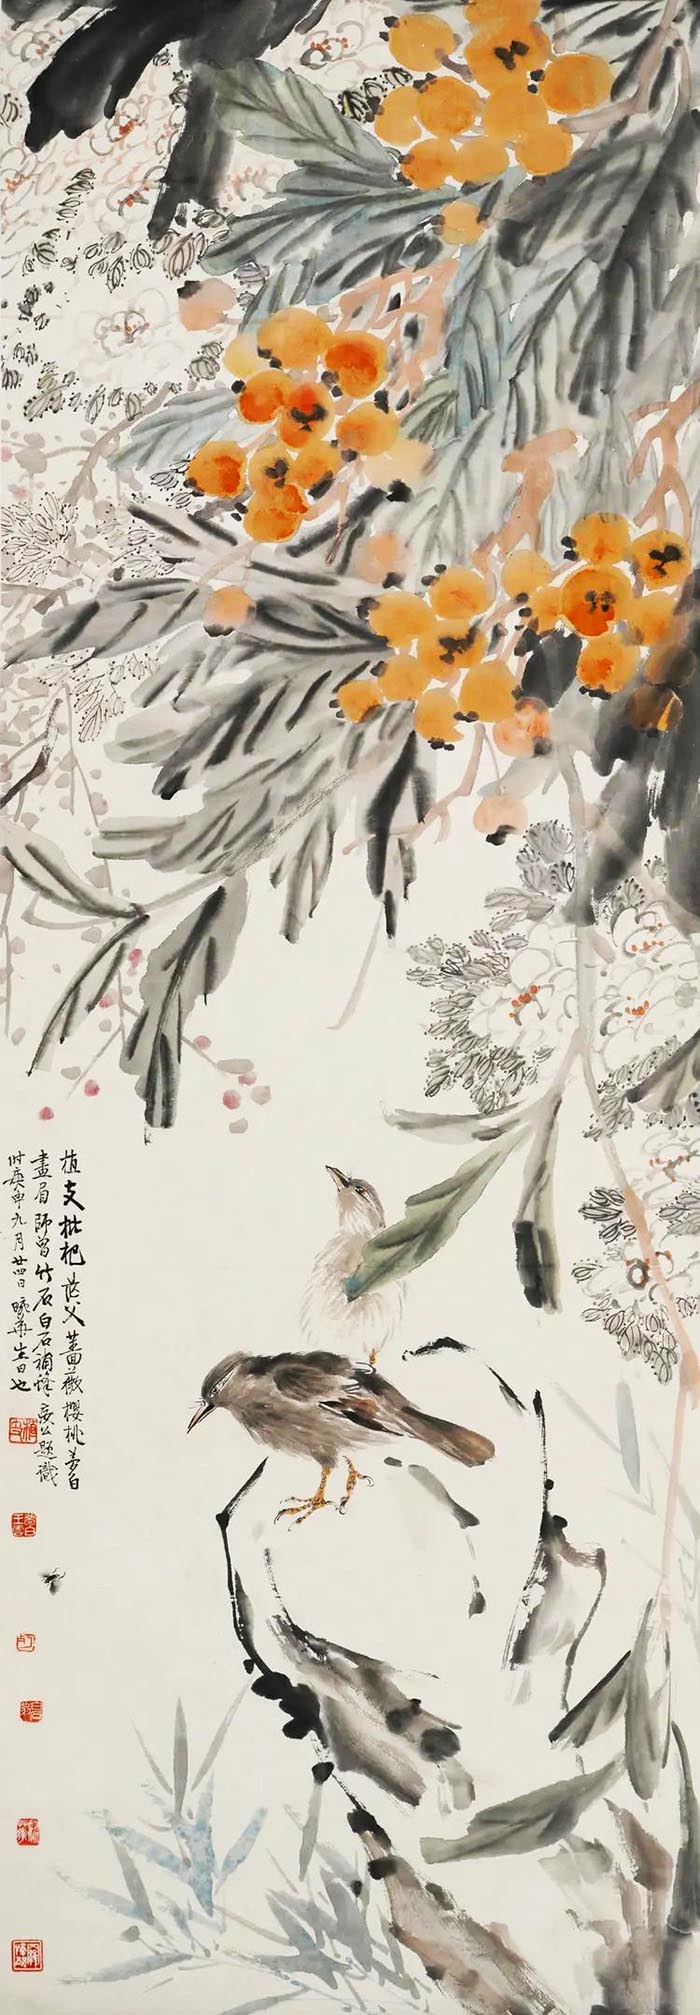 辽宁省博物馆年末巨献 齐白石和他的师友弟子们 特展明日开幕